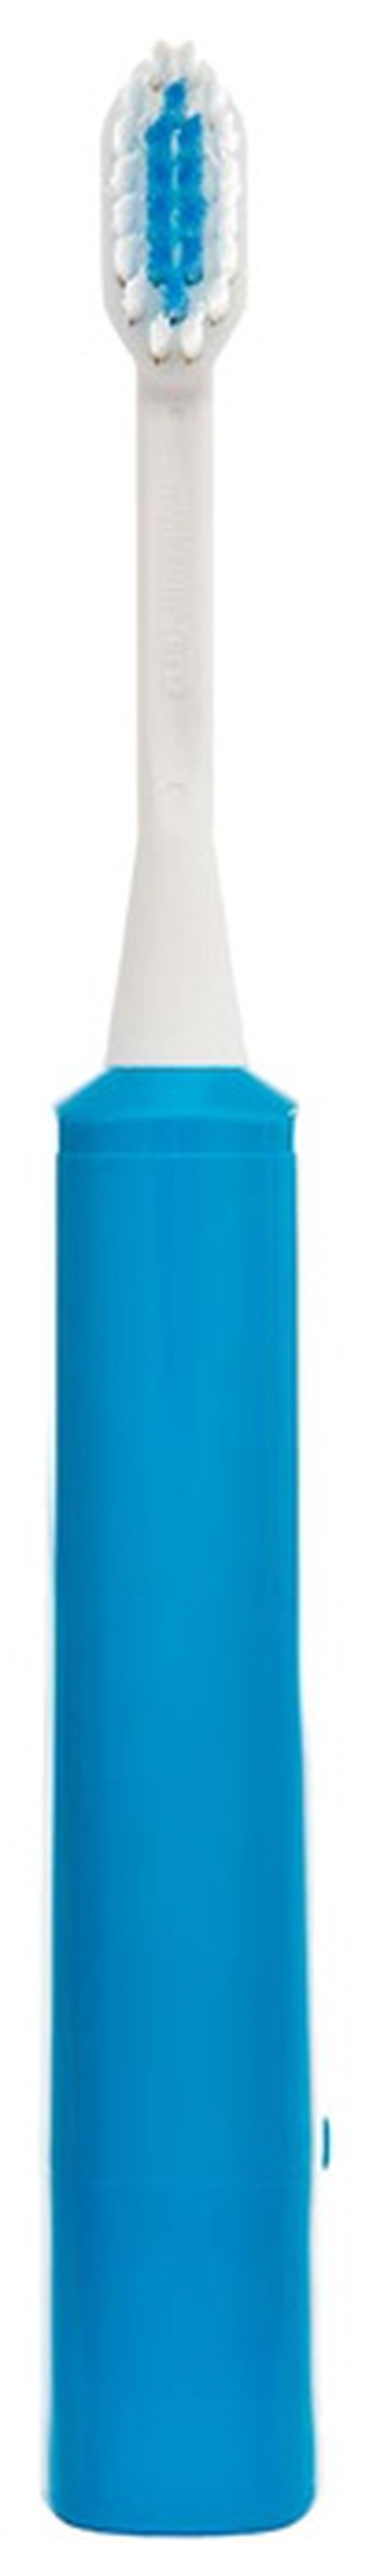 Электрическая зубная щетка Hapica Minus iON Case DBM-5B, синяя фото